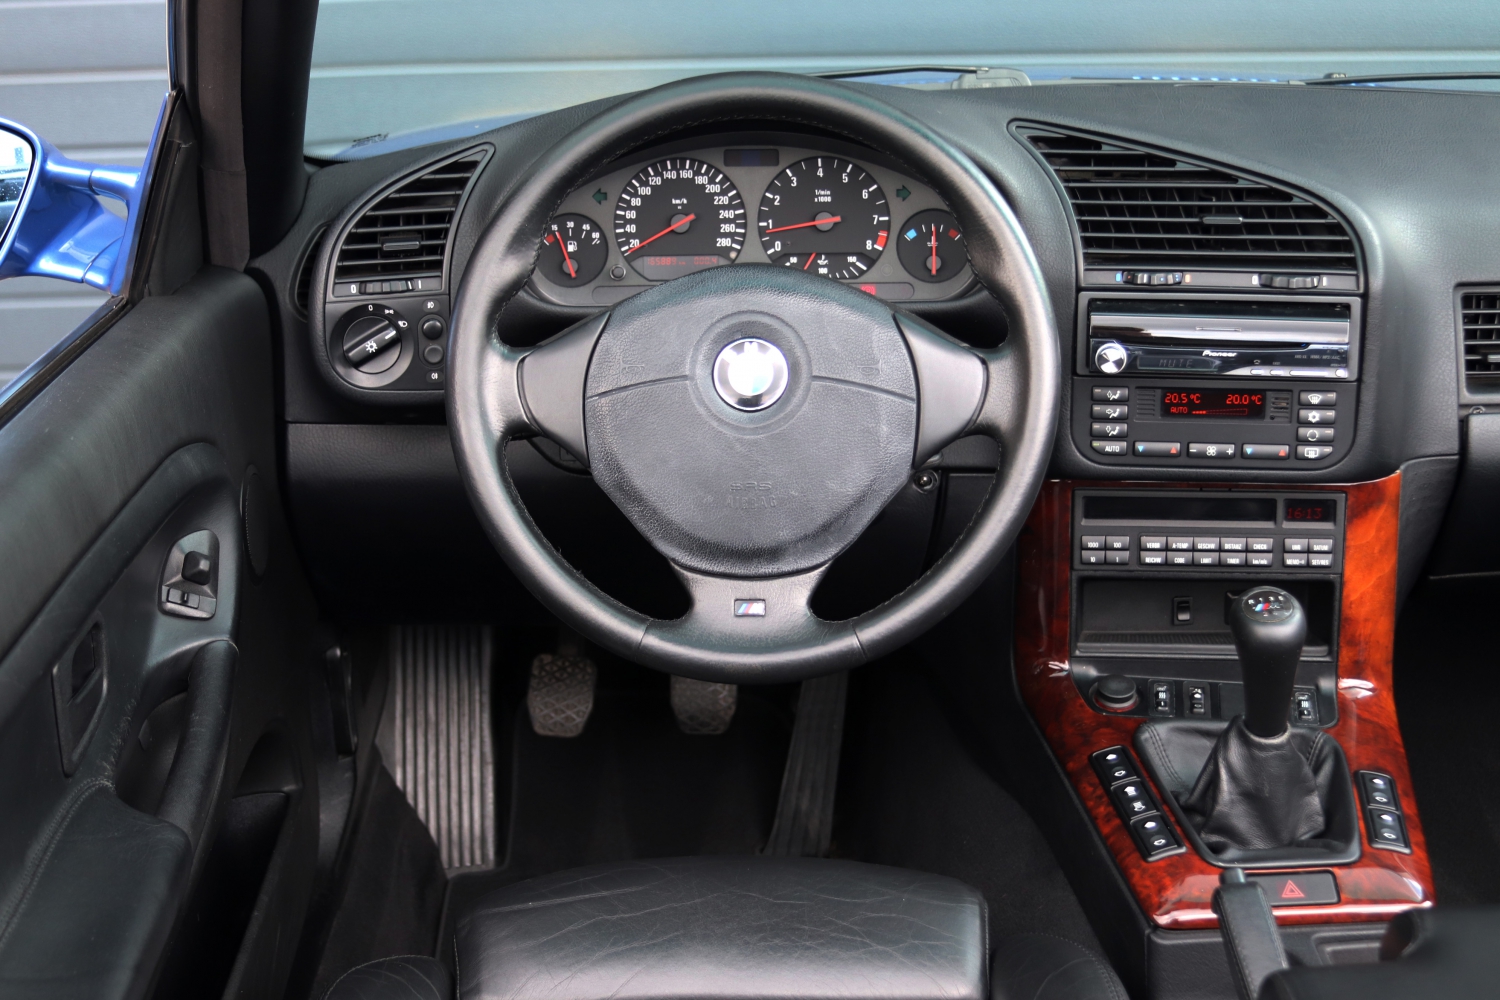 BMW-M3-Cabriolet-3.2-E36-1997-SBNJ95-008.JPG